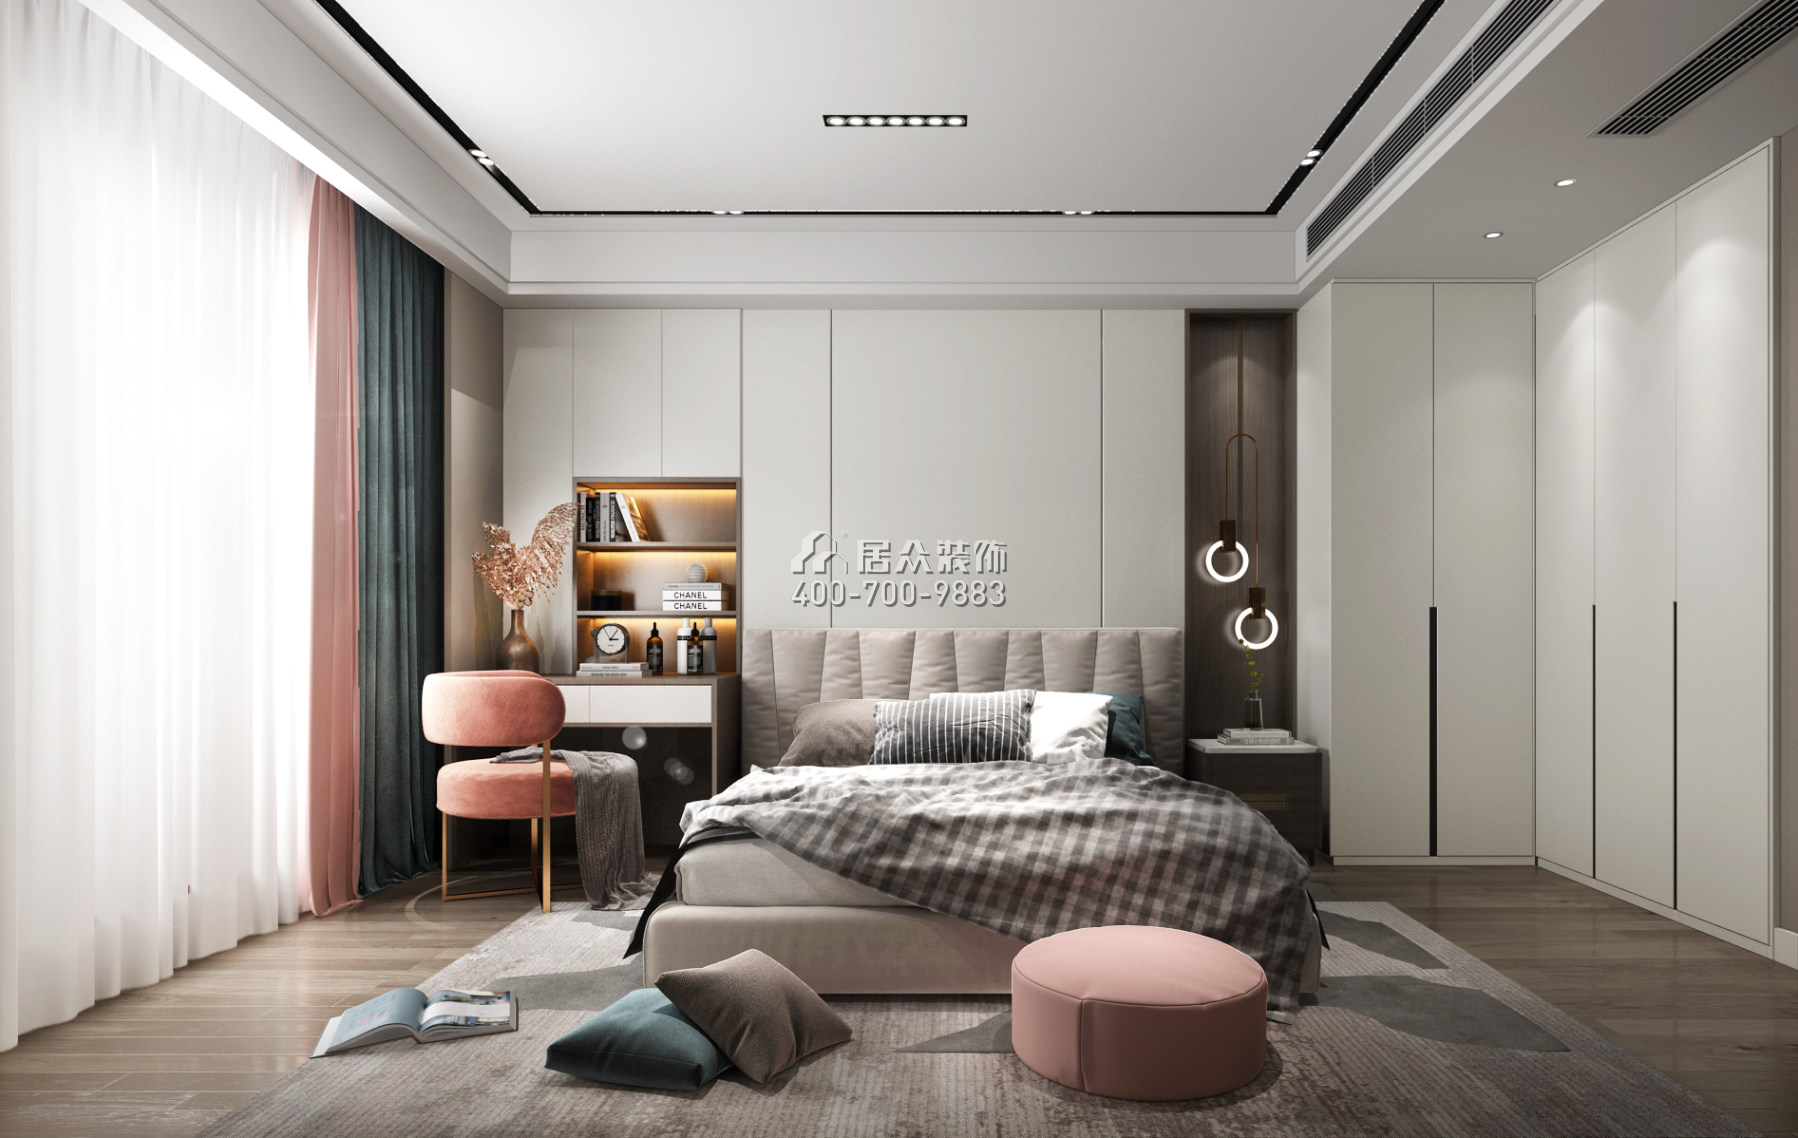 君华御庭189平方米现代简约风格平层户型卧室装修效果图